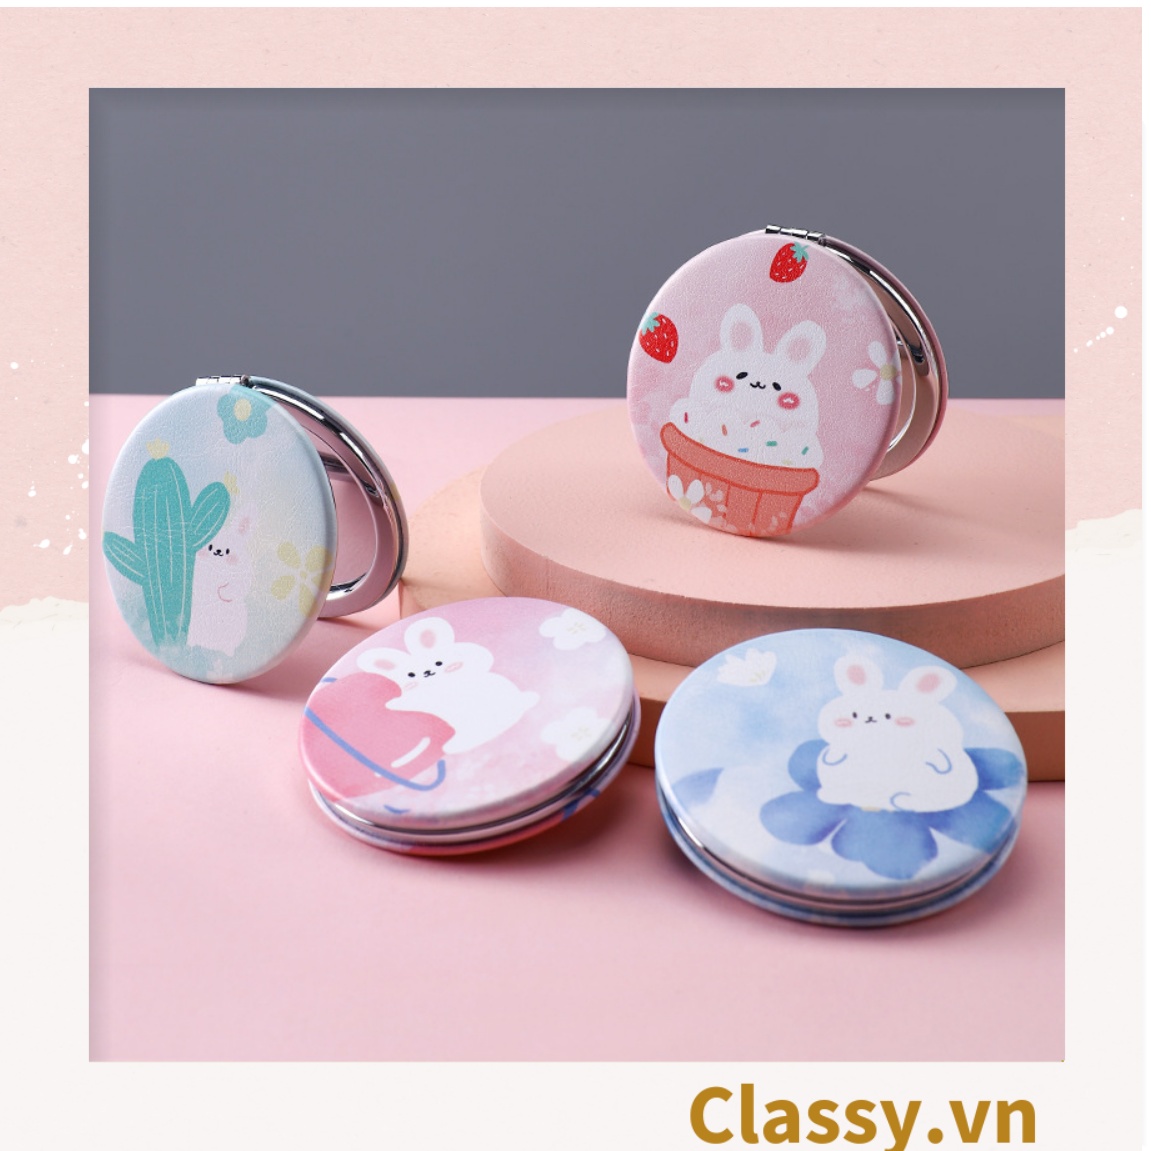 Gương trang điểm cầm tay mini 2 mặt bỏ túi, Gương cầm tay mini Hàn Quốc siêu cute, Gương hoạt hình PK570